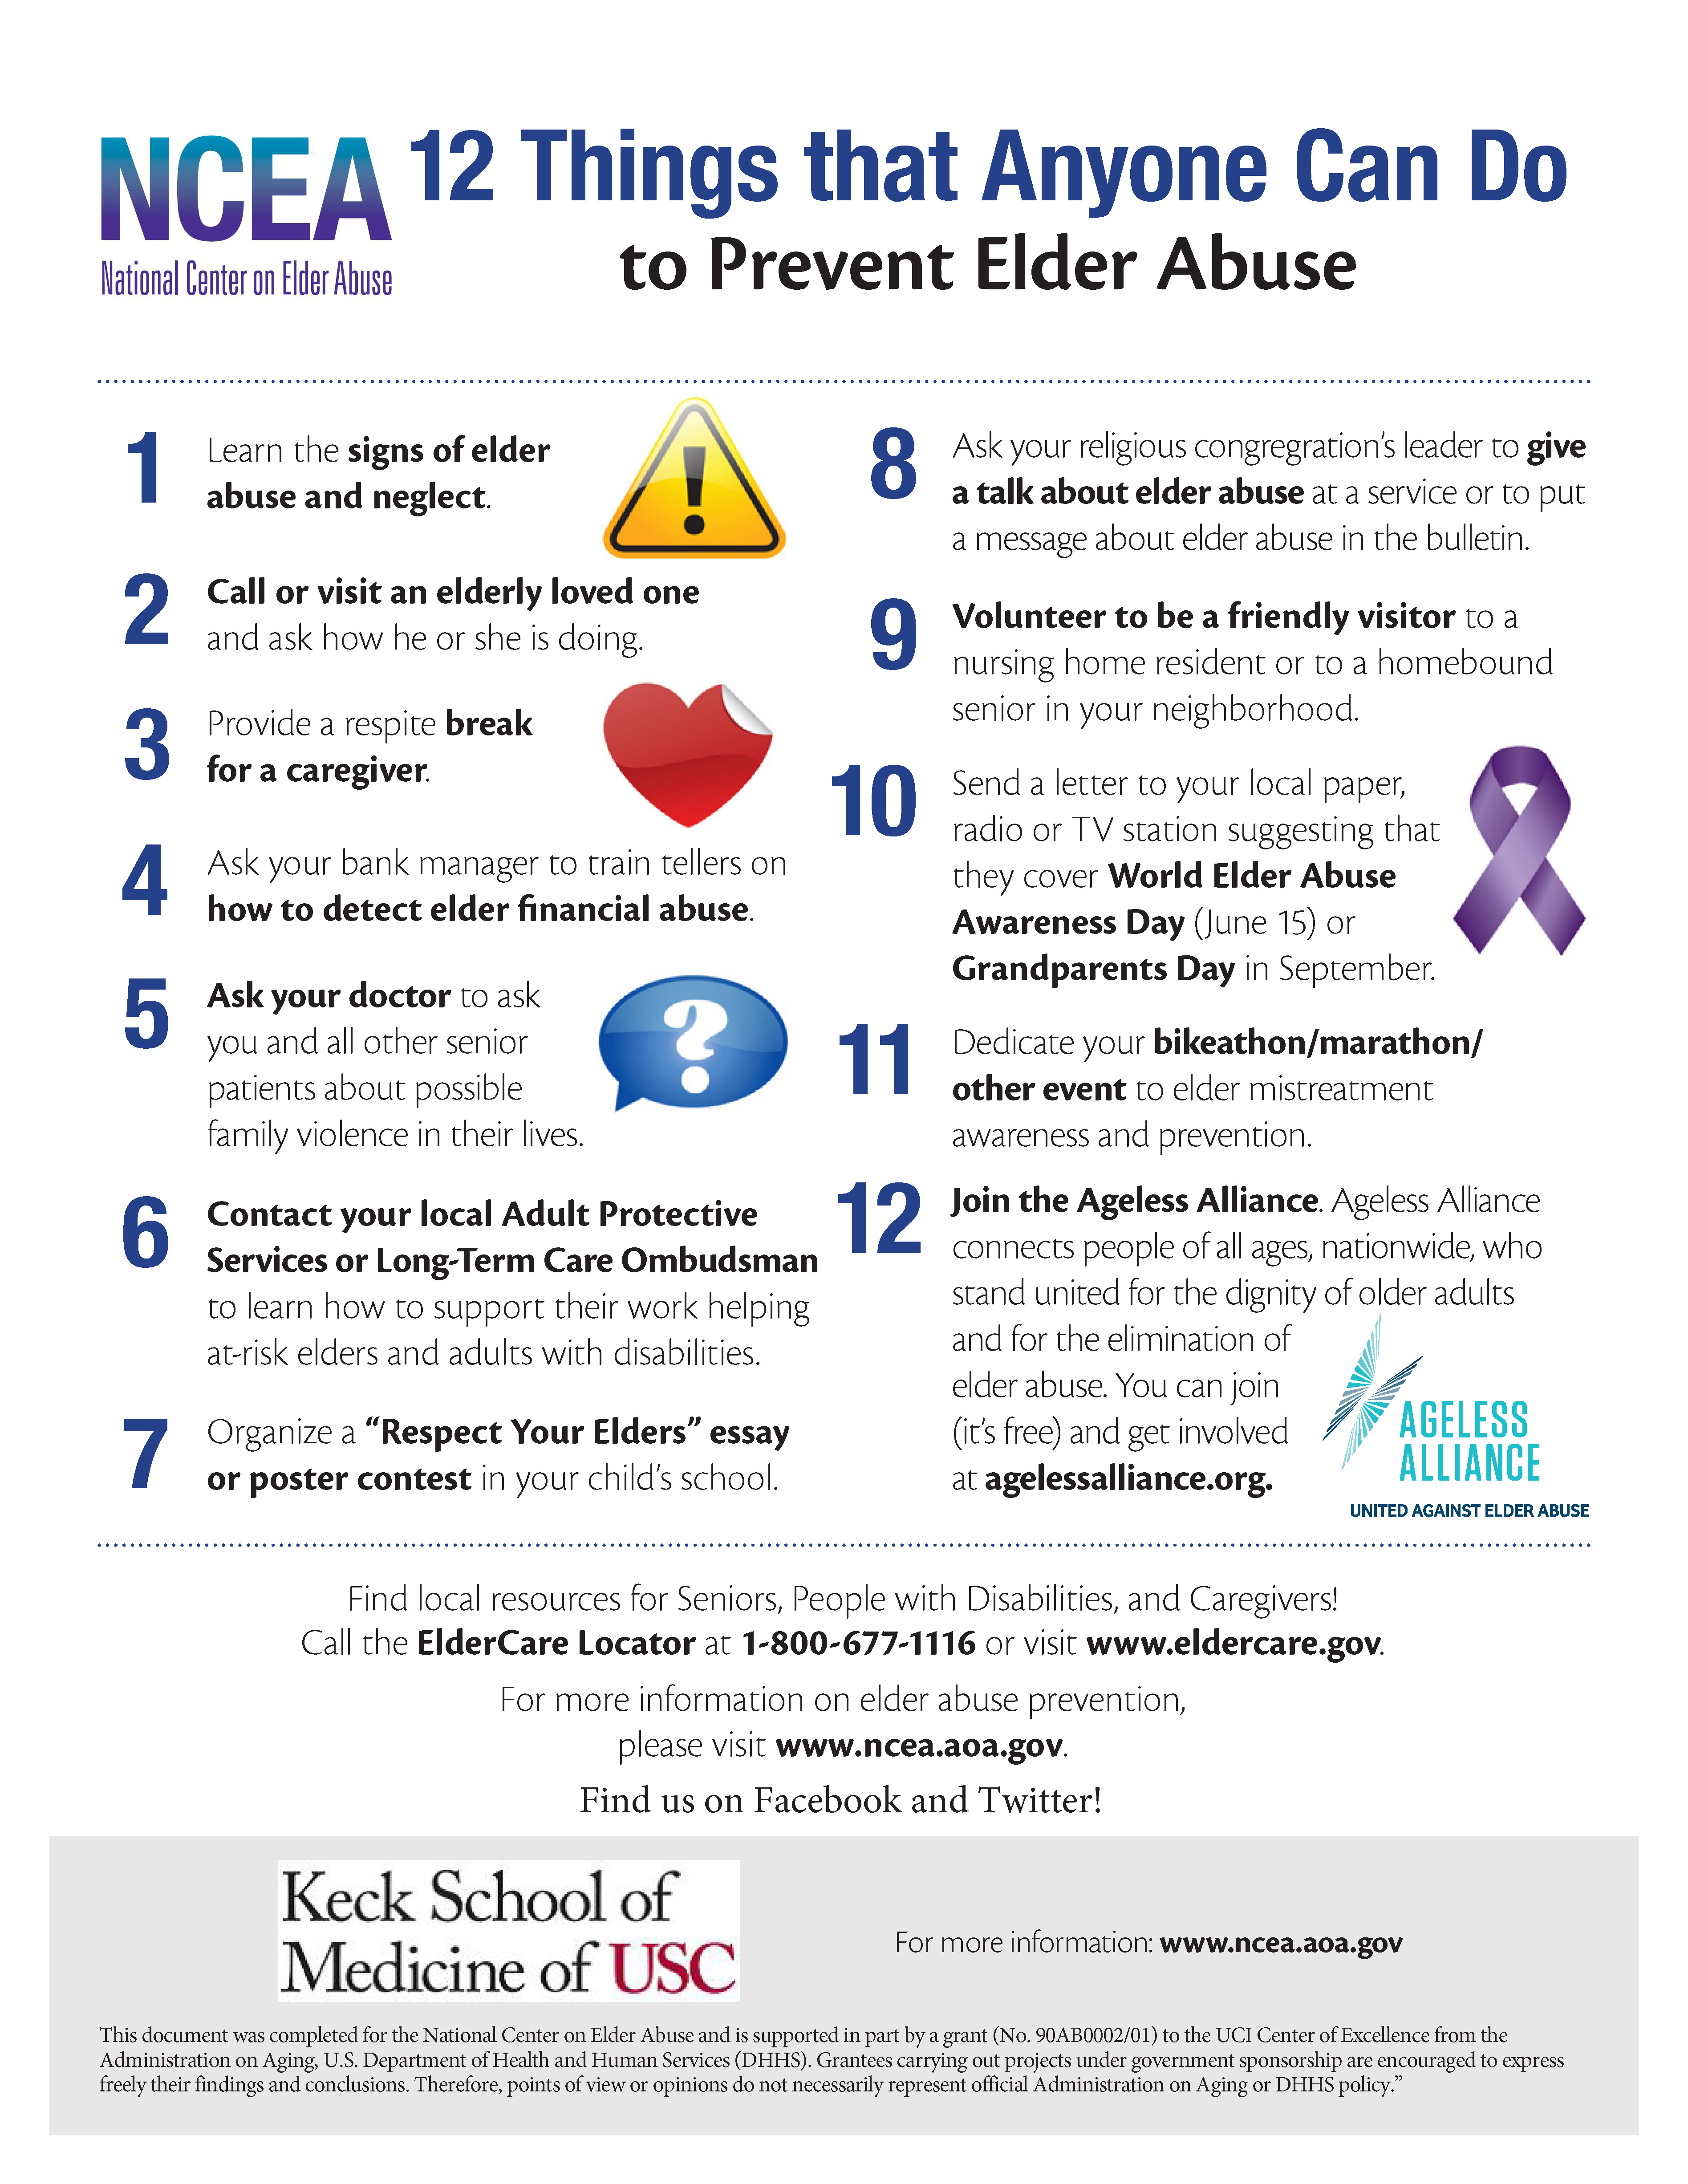 Elder abuse prevention fact sheet